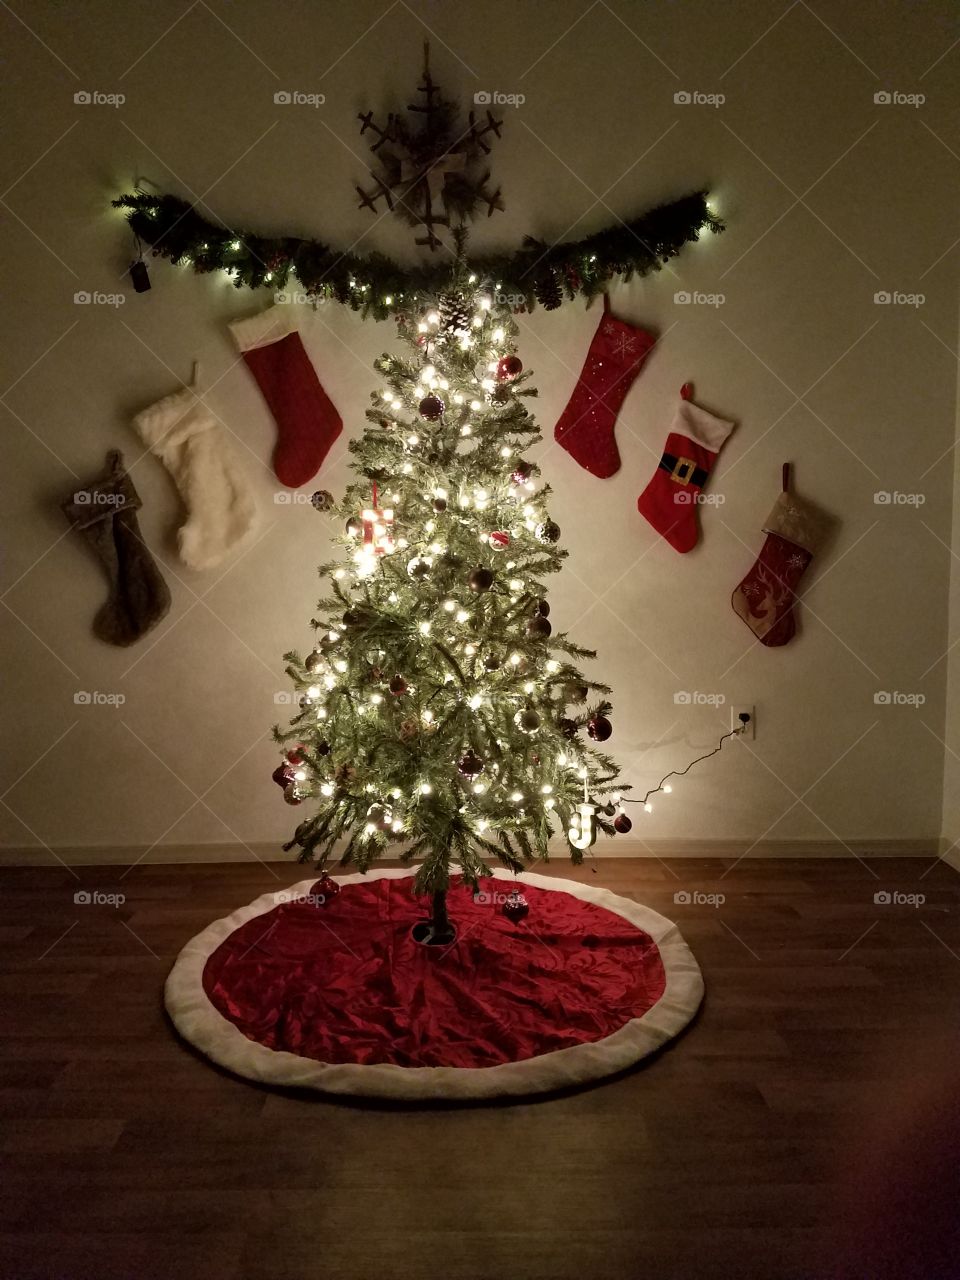 my Christmas tree